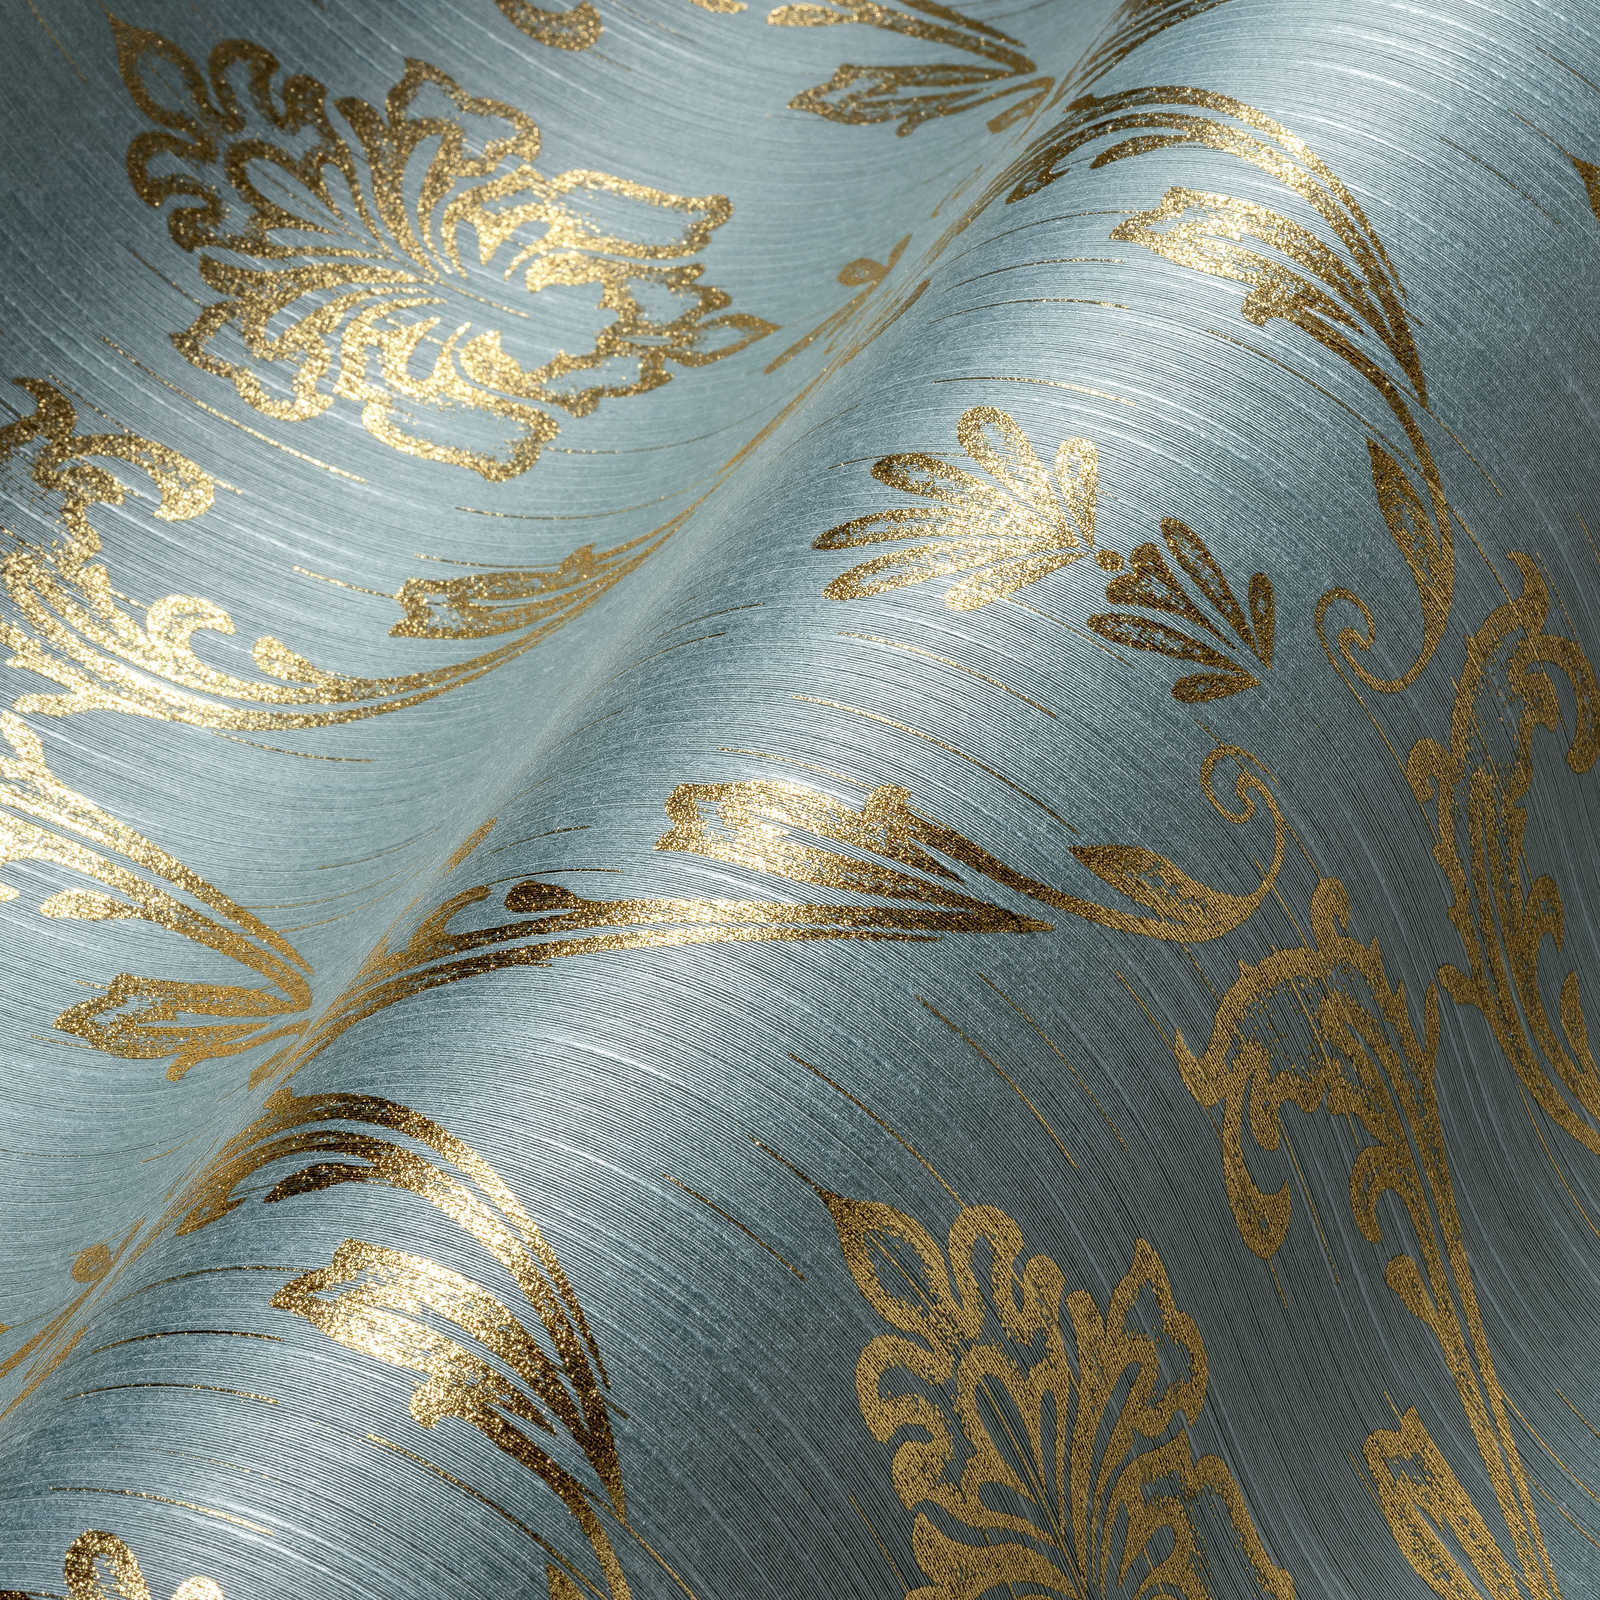             Ornamenteel behang met bloemenelementen in goud - goud, blauw, groen
        